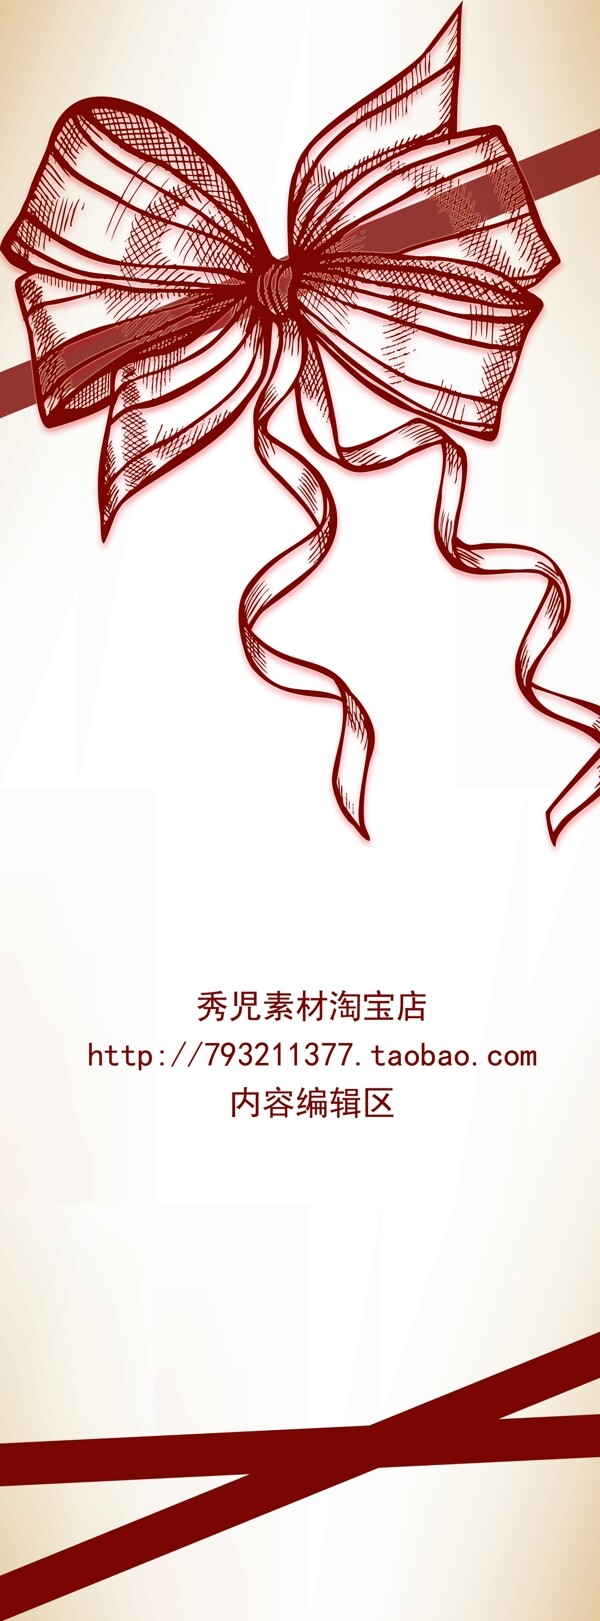 简约中国结展架模板设计画面素材海报